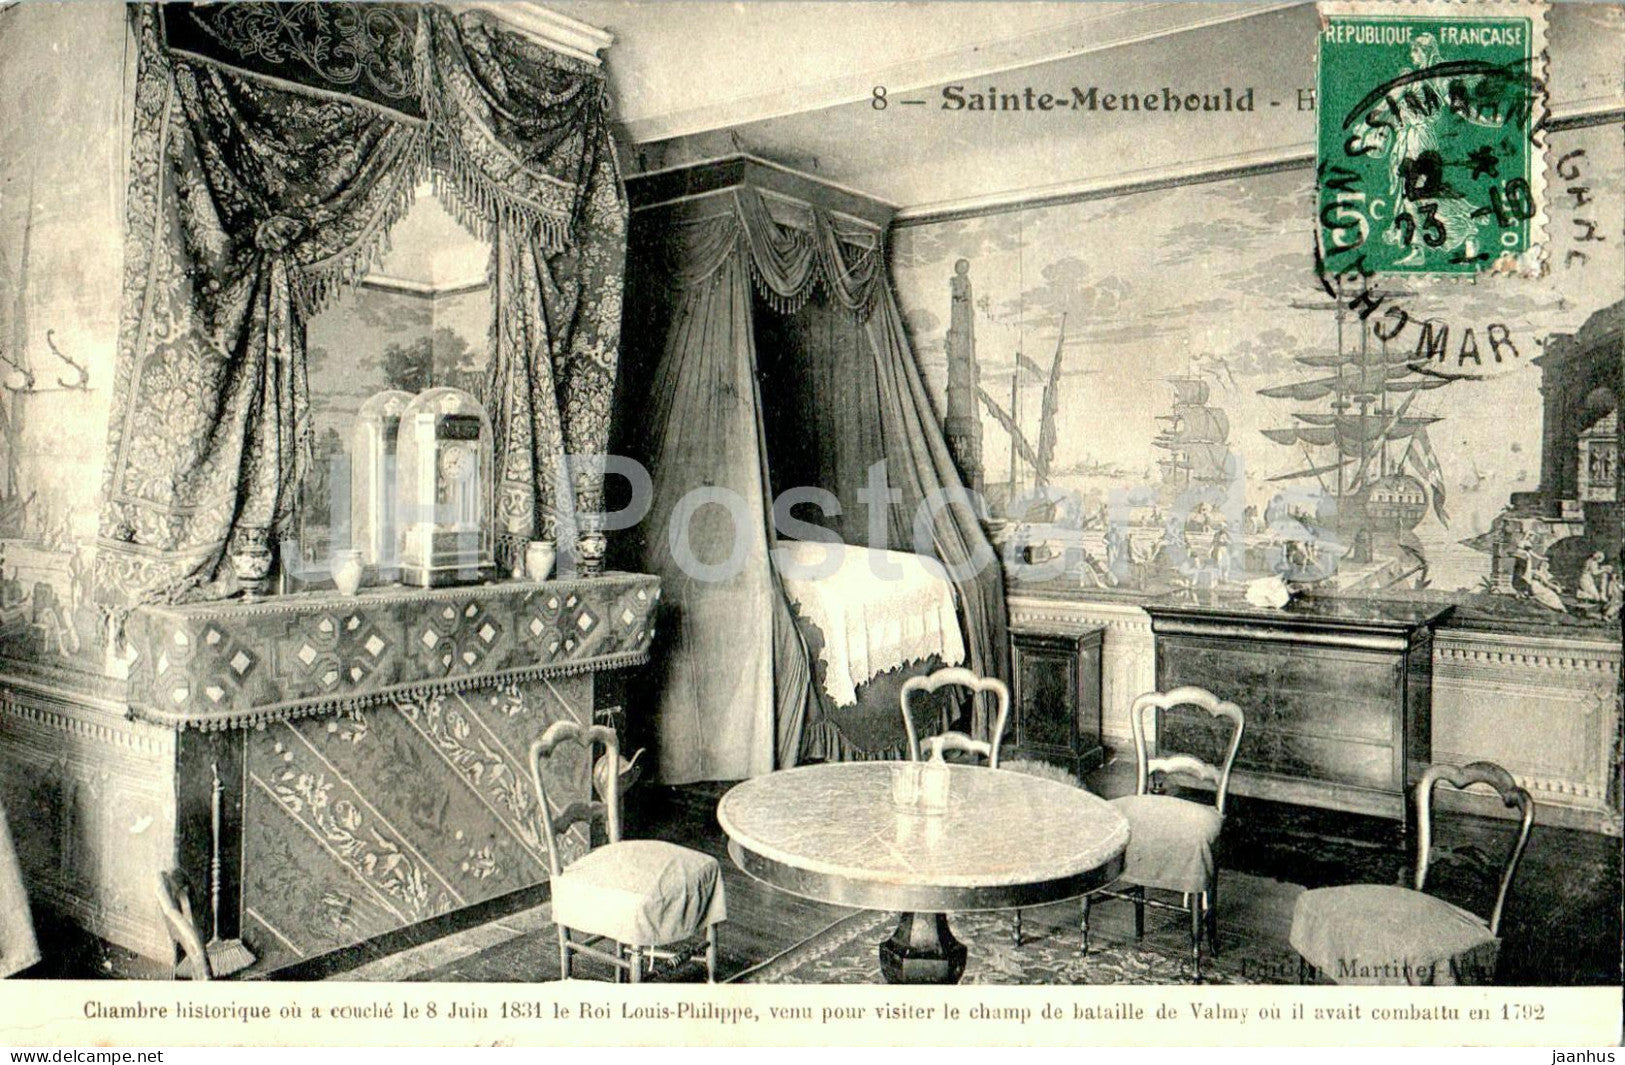 Sainte Menehould - Chambre historique de la Famille Royale - 8 - old postcard - 1910 - France - used - JH Postcards